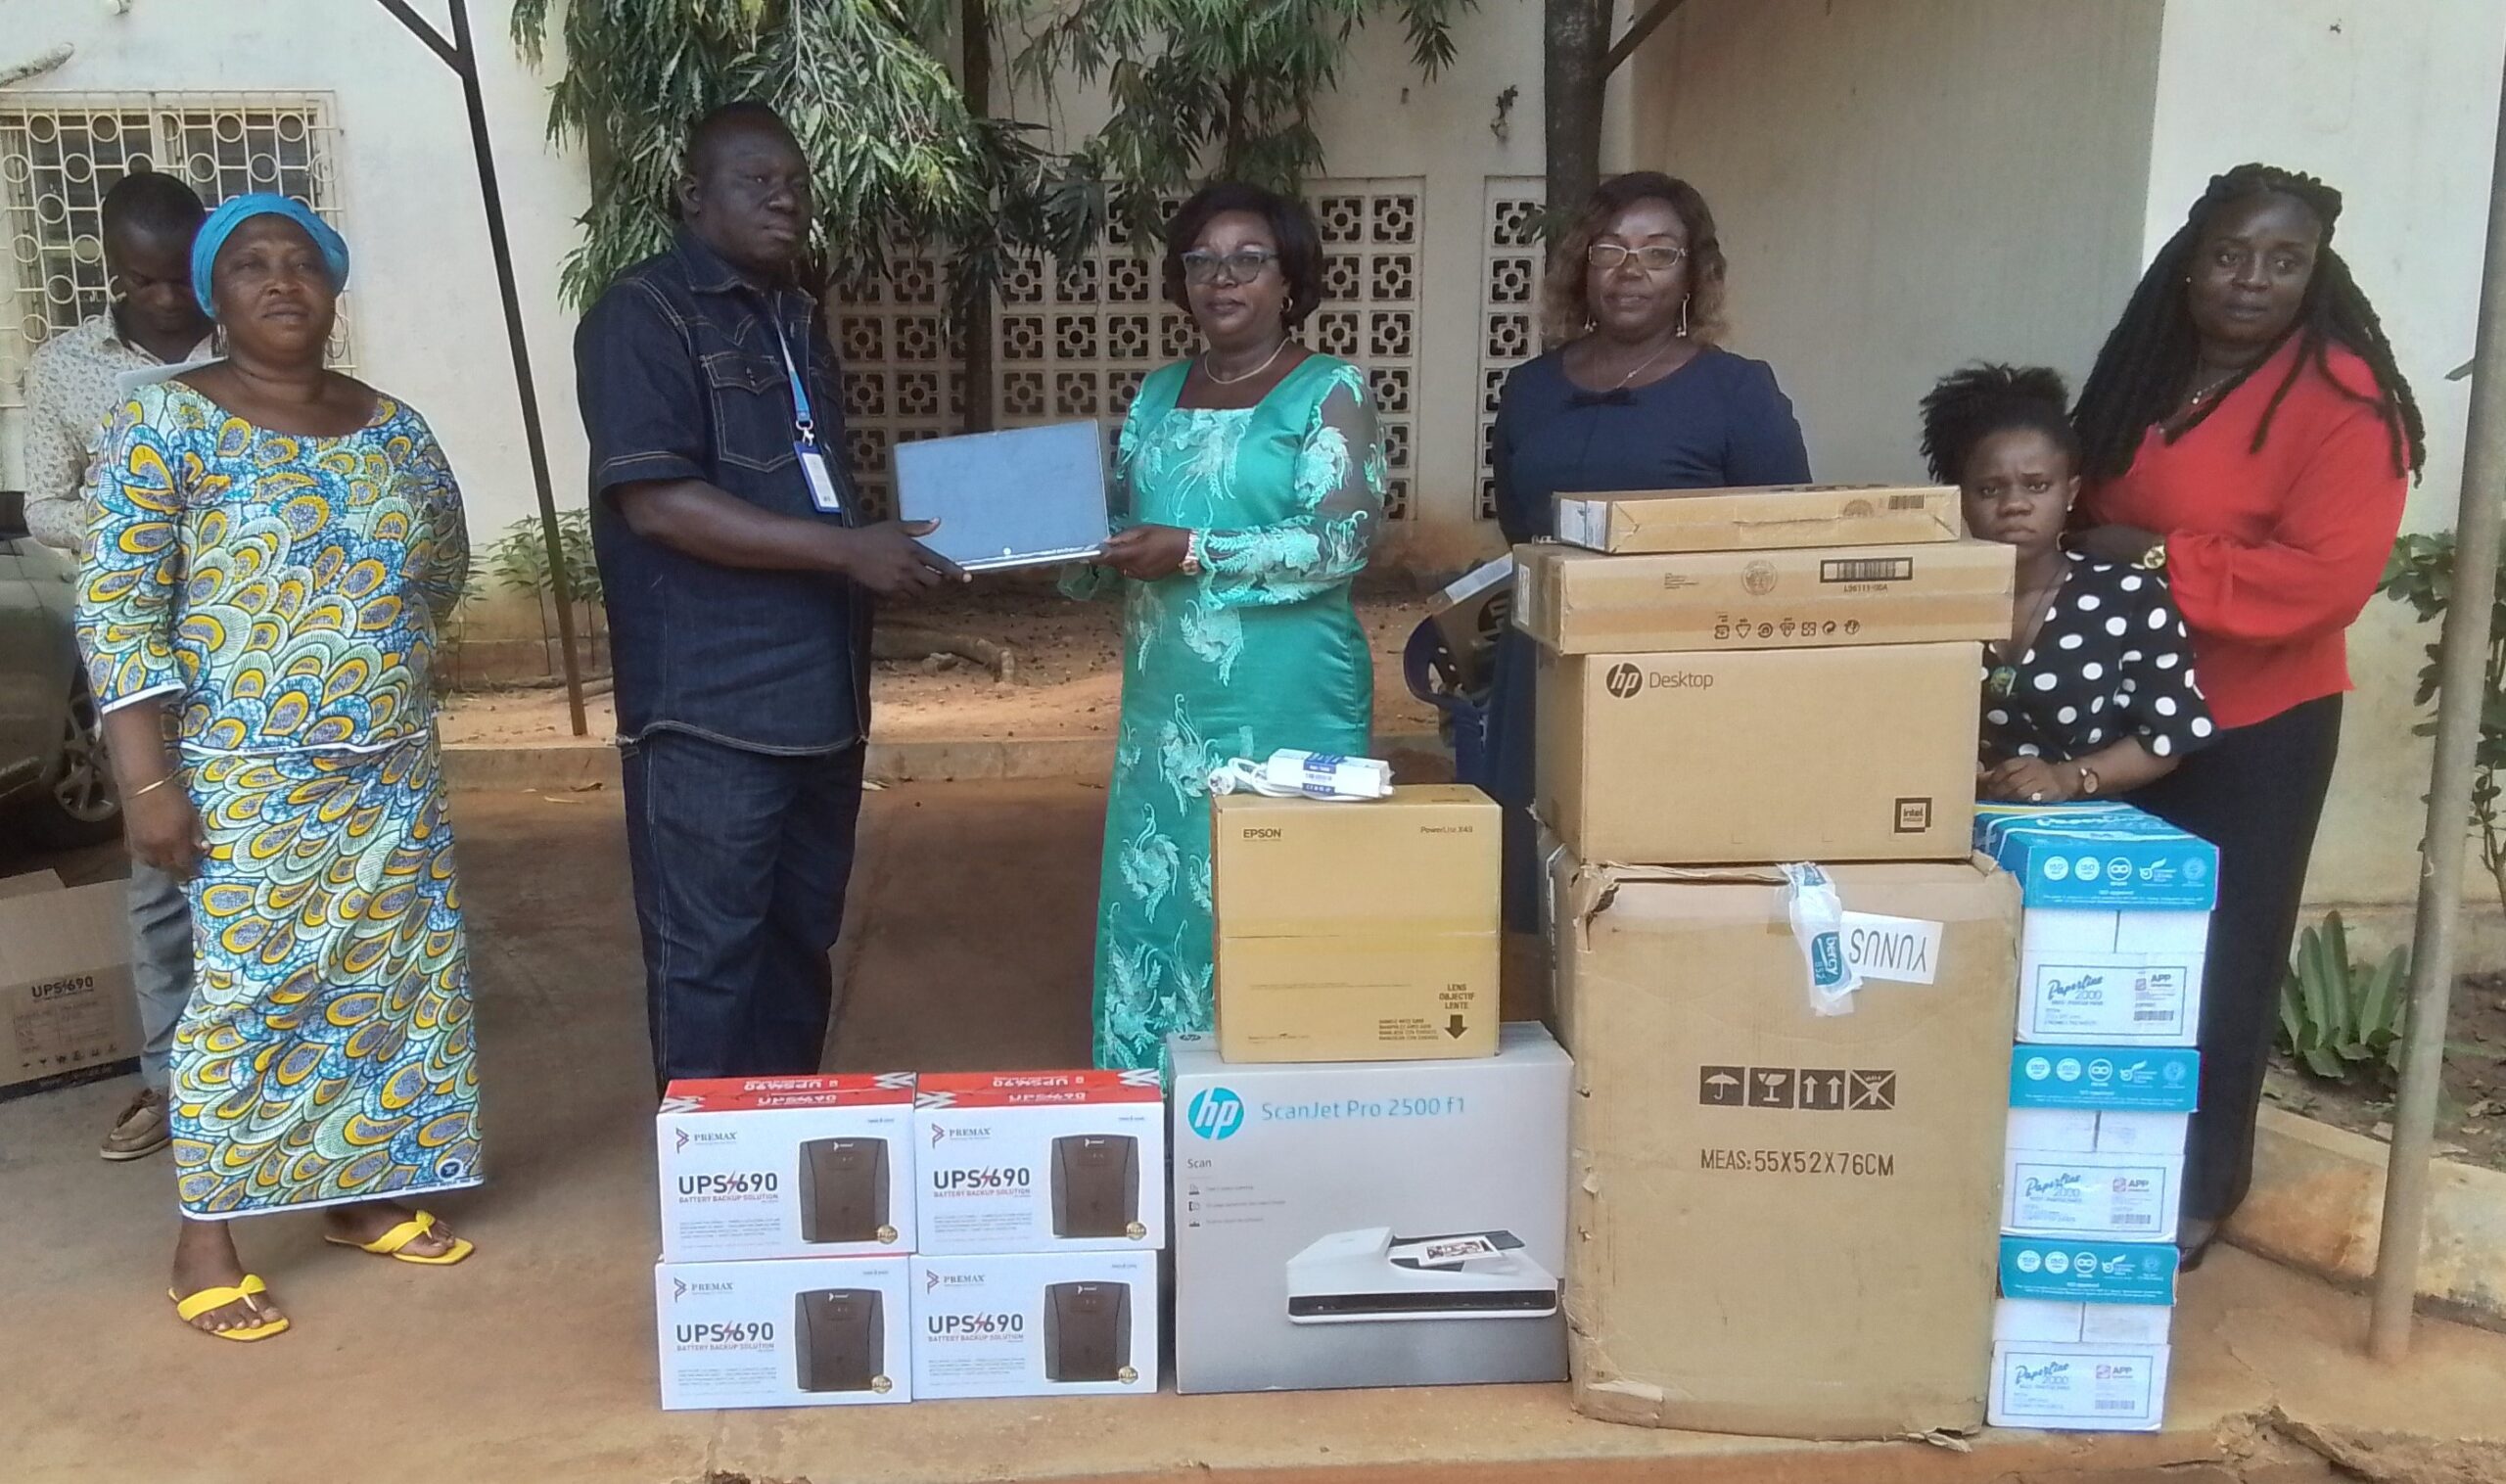 Lutte contre les violences de genre au Togo : La société civile renforcé en matériel informatique